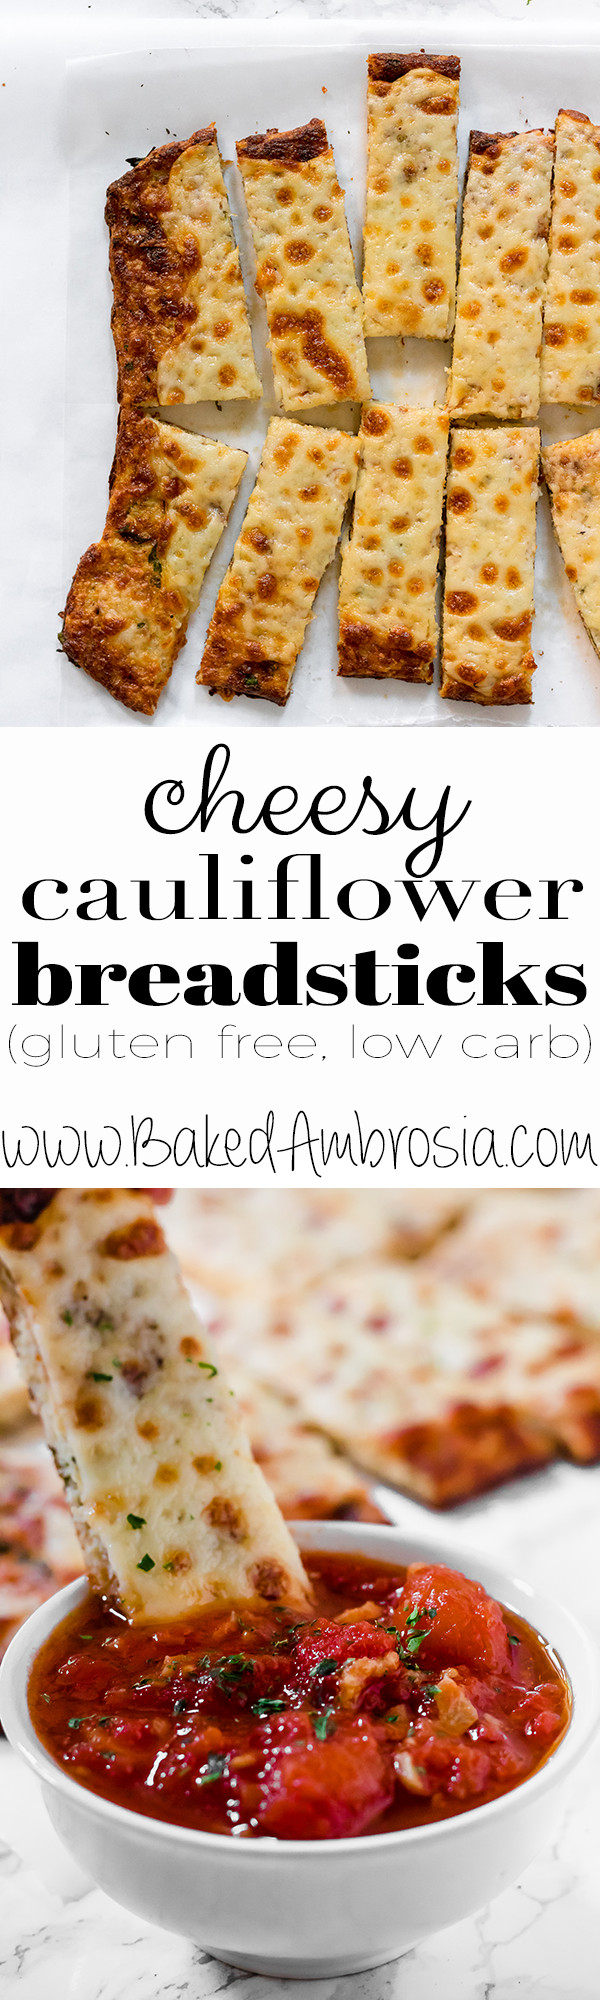 Gluten Free Cauliflower Recipes
 Cauliflower Breadsticks low carb & gluten free Baked